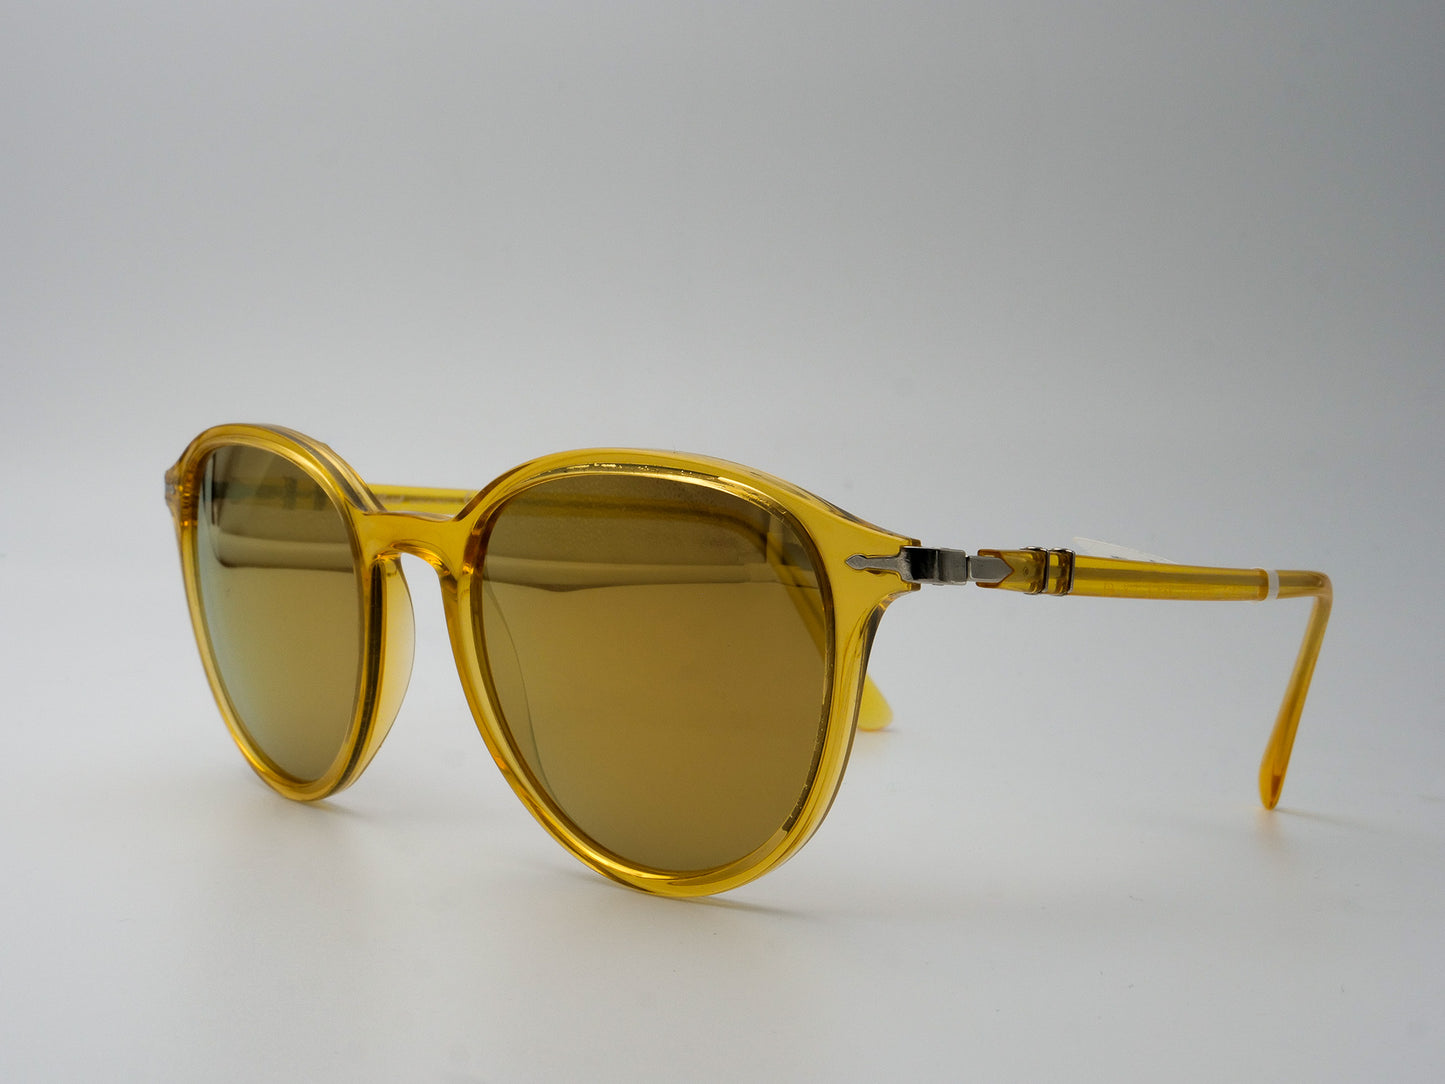 Persol Sonnenbrille Mod. 3169-S